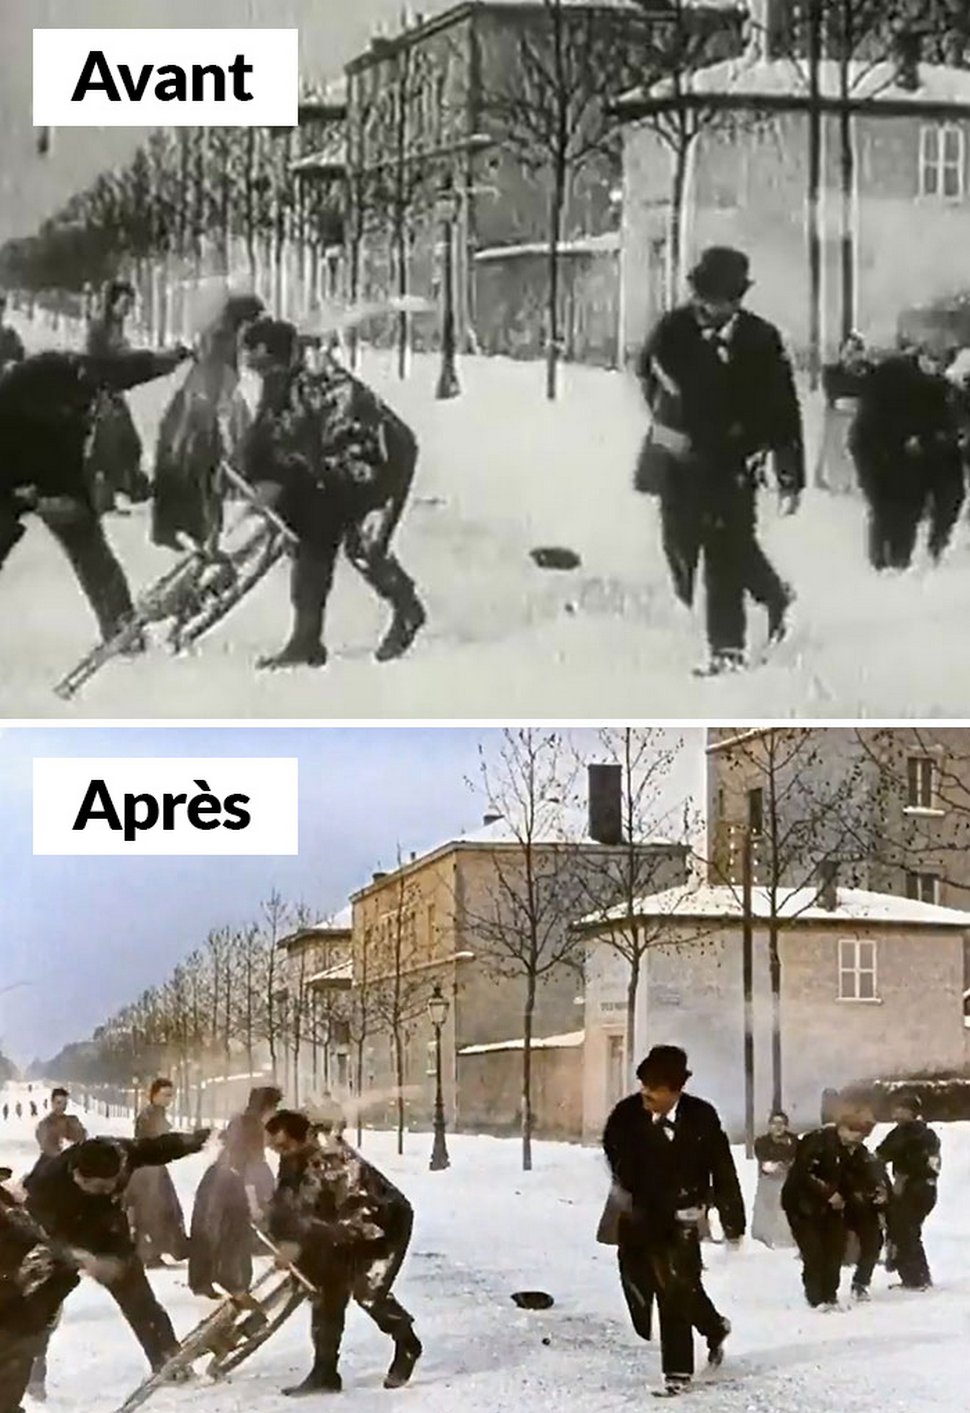 Ce film en noir et blanc de 1896 d’une bataille de boules de neige en France a été colorisé pour avoir l’air moderne